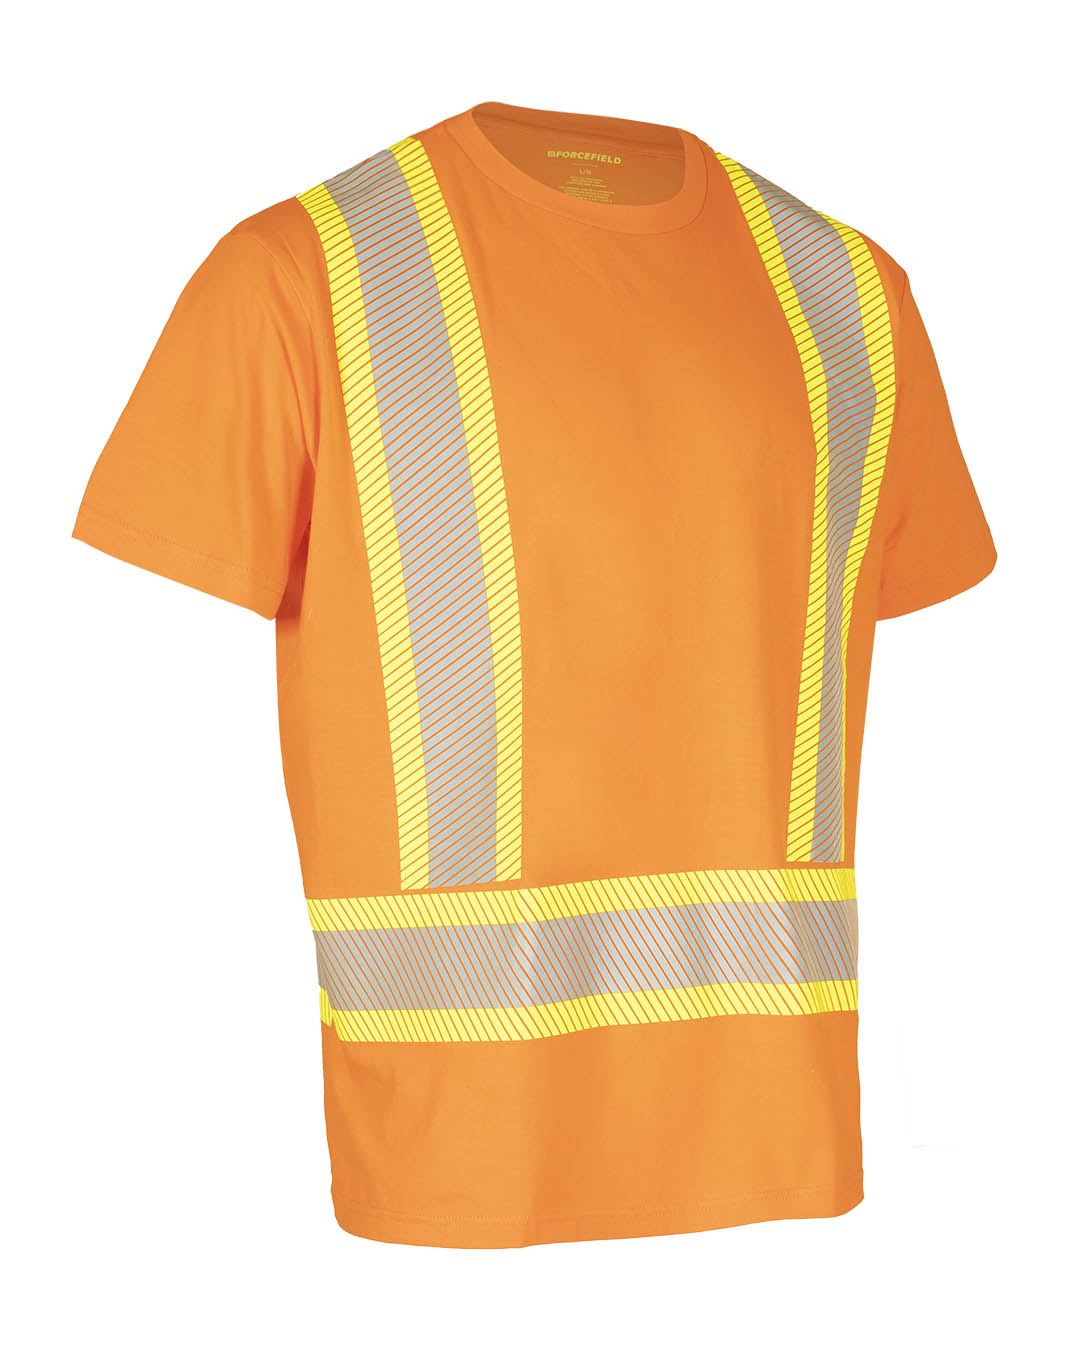 T-shirt de sécurité à manches courtes et col rond haute visibilité avec bande réfléchissante segmentée